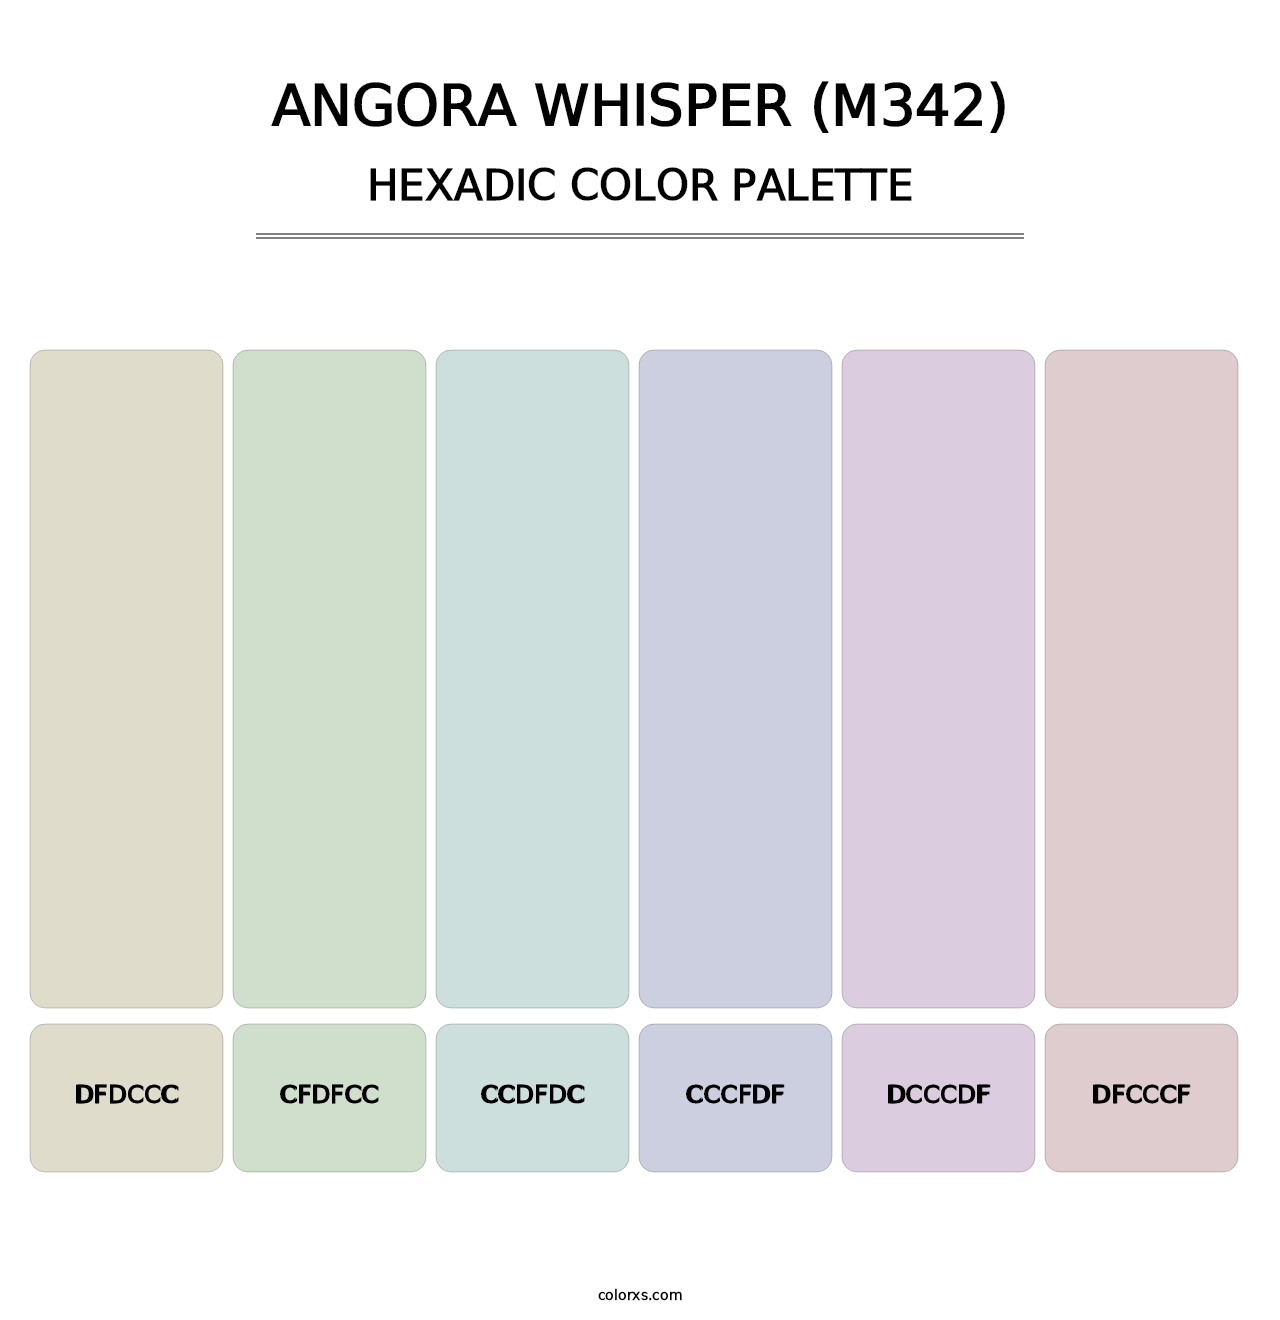 Angora Whisper (M342) - Hexadic Color Palette